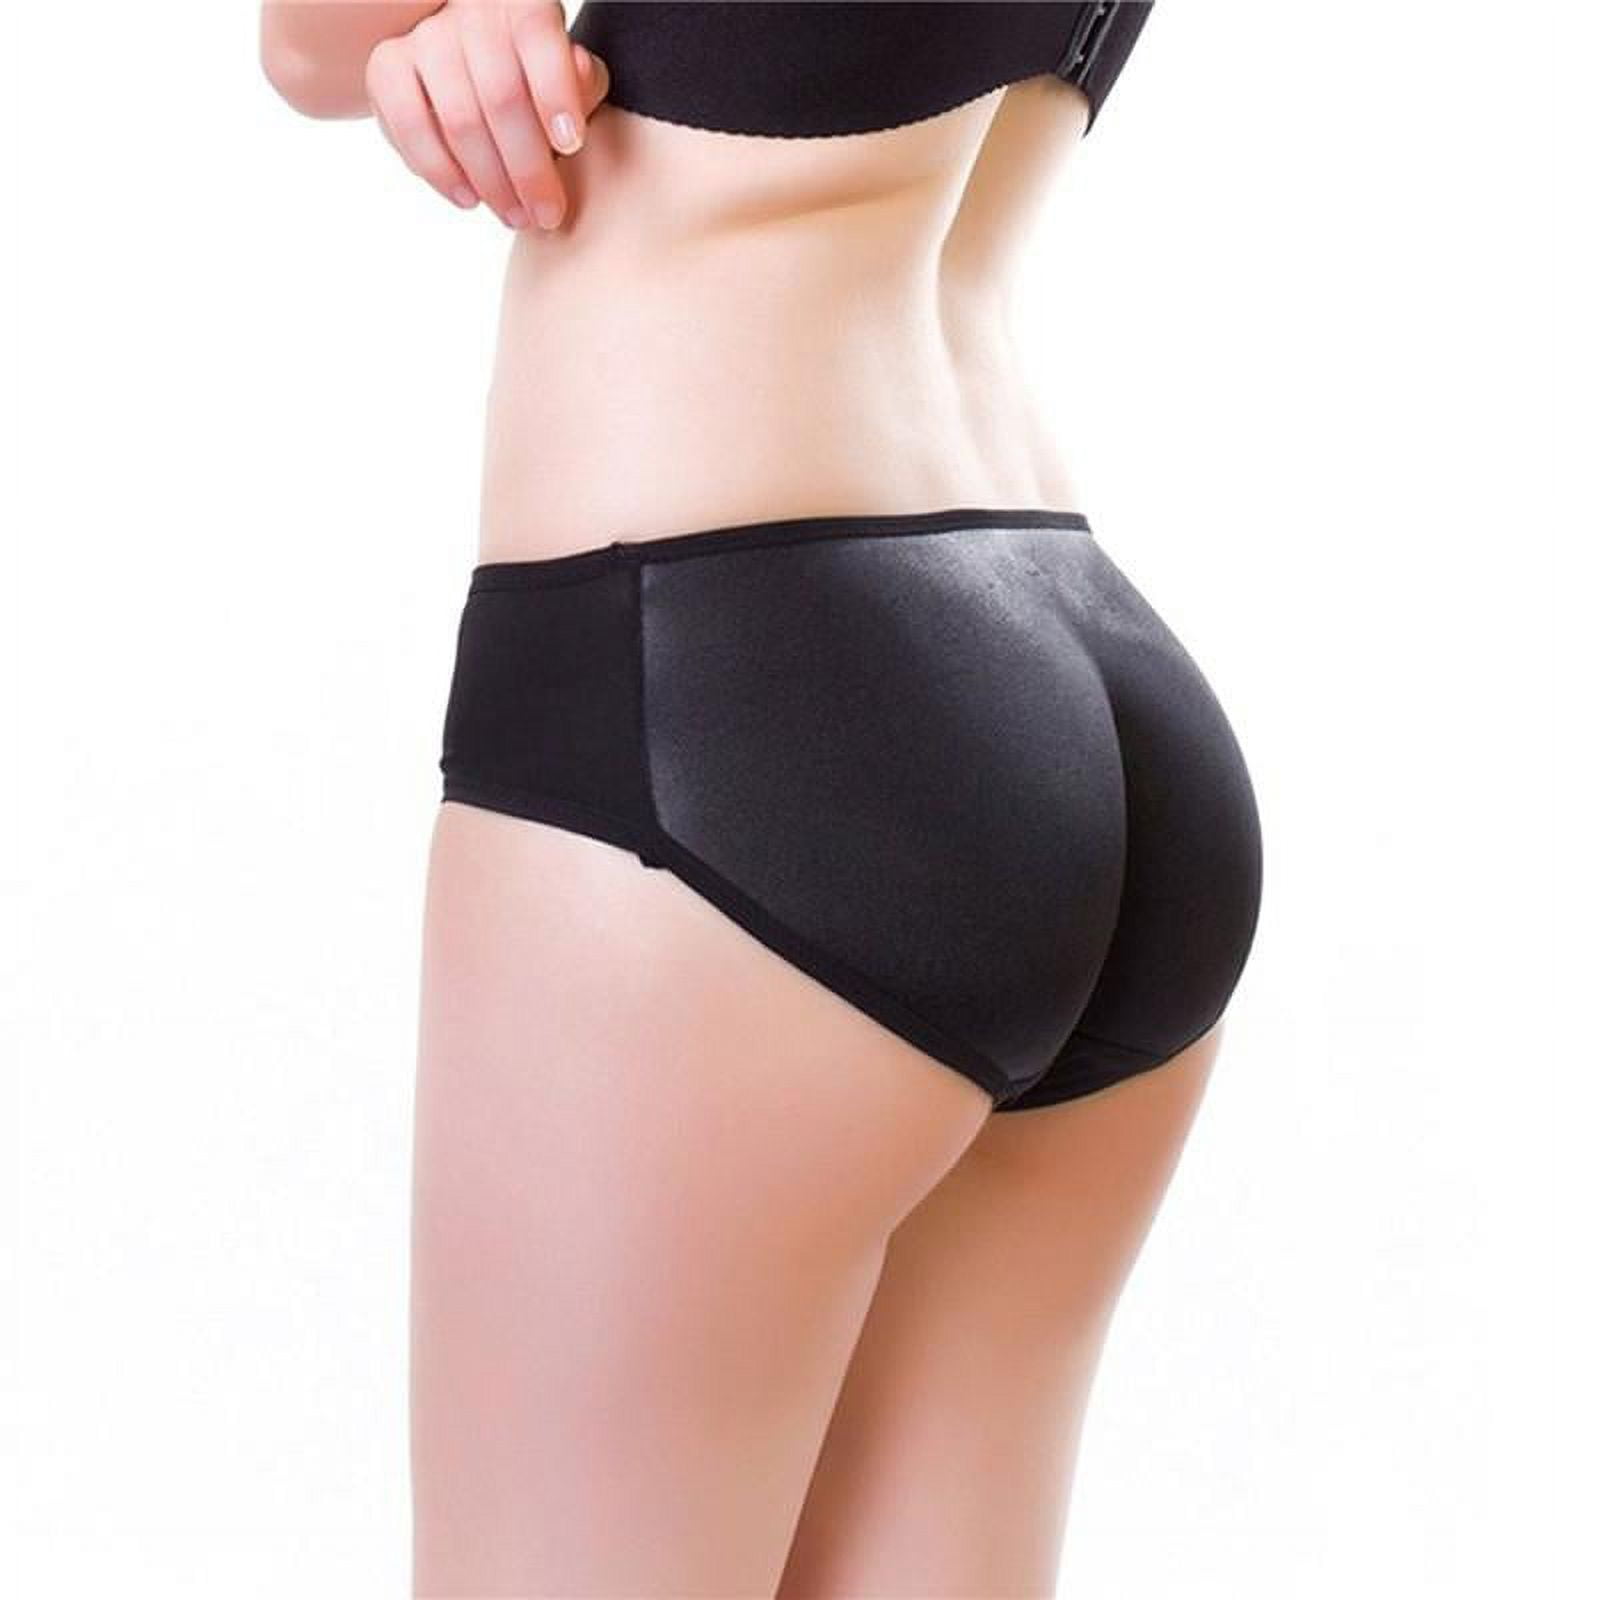 Beige, TagL=US S) Women Padded Panties Hip Enhancer Bum Butt Lift